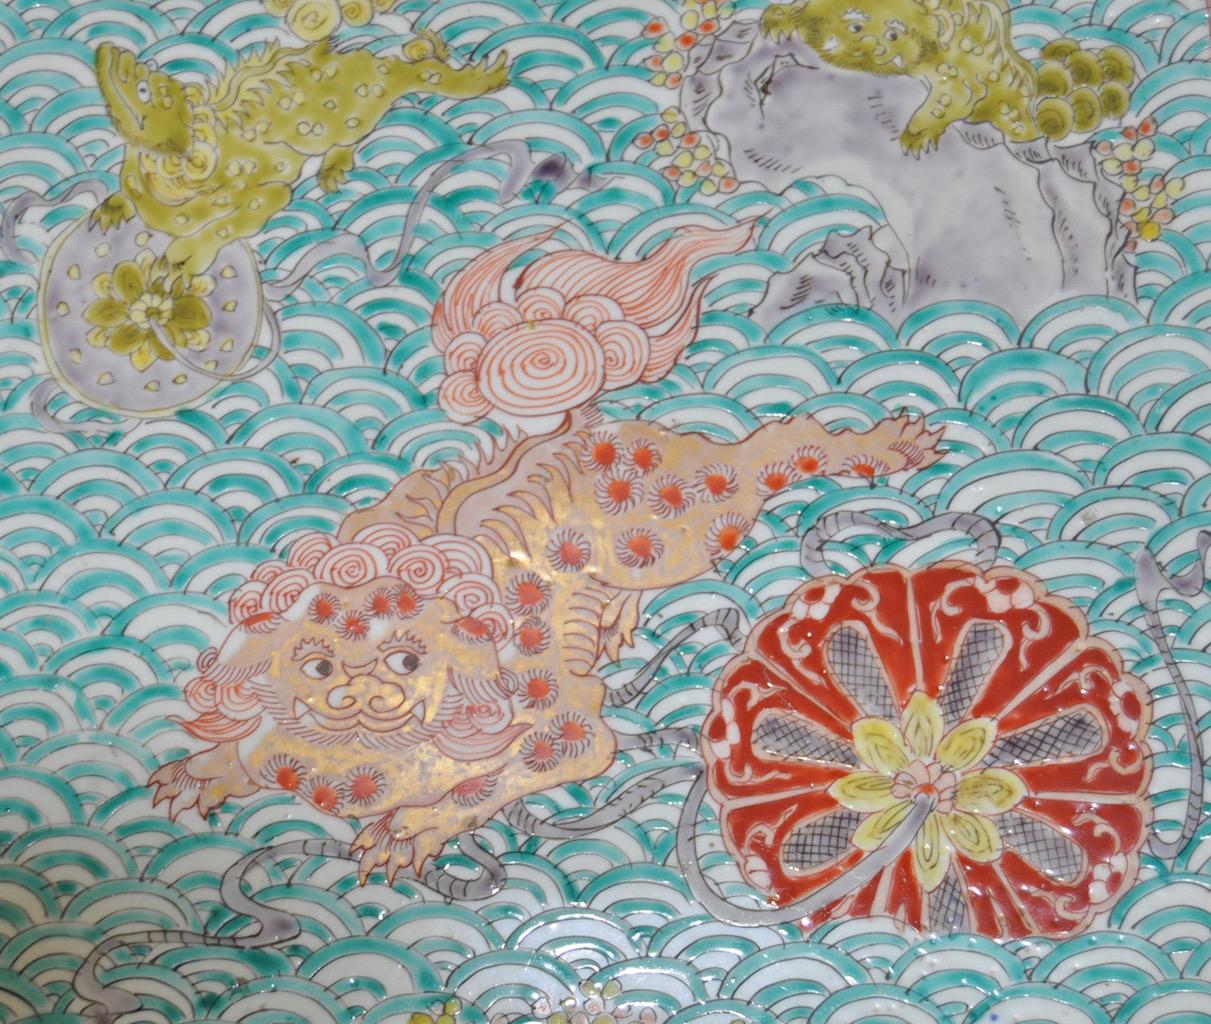 Chinesische emaillierte Keramikplatte aus dem 19. Jahrhundert.

Wunderschön handbemalt und mit vielen Details versehen. 

Sehr guter Zustand.

Abmessungen 18